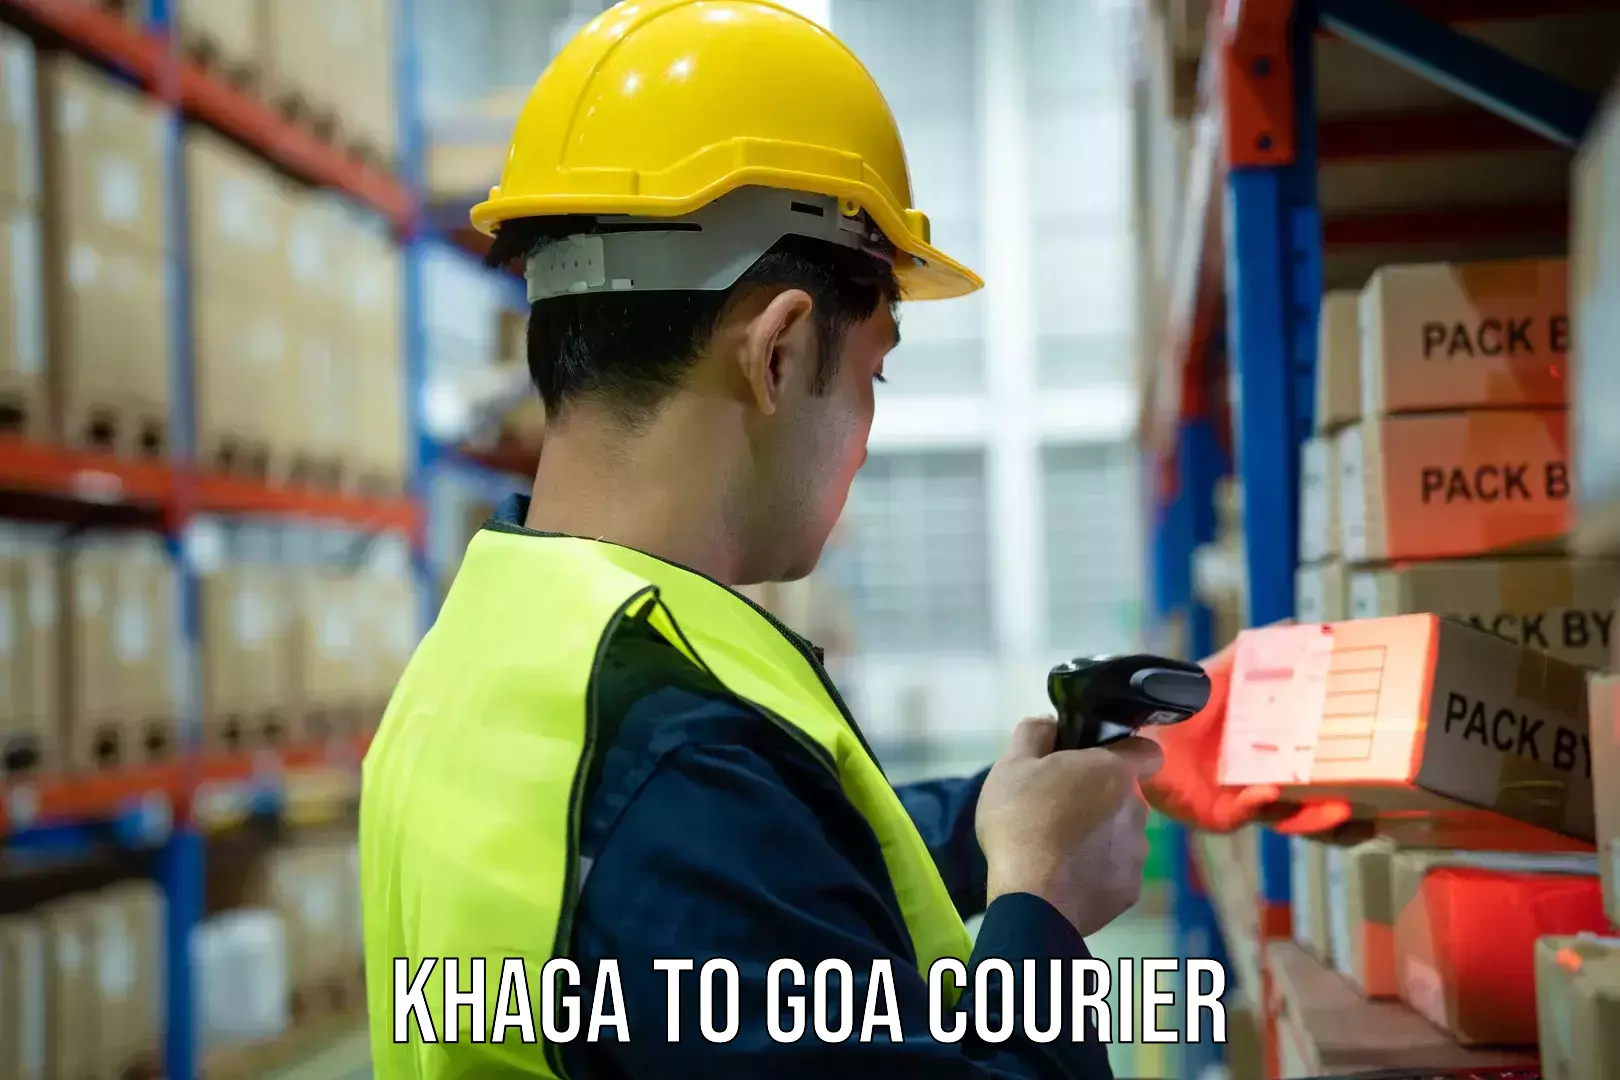 Courier service innovation Khaga to Ponda